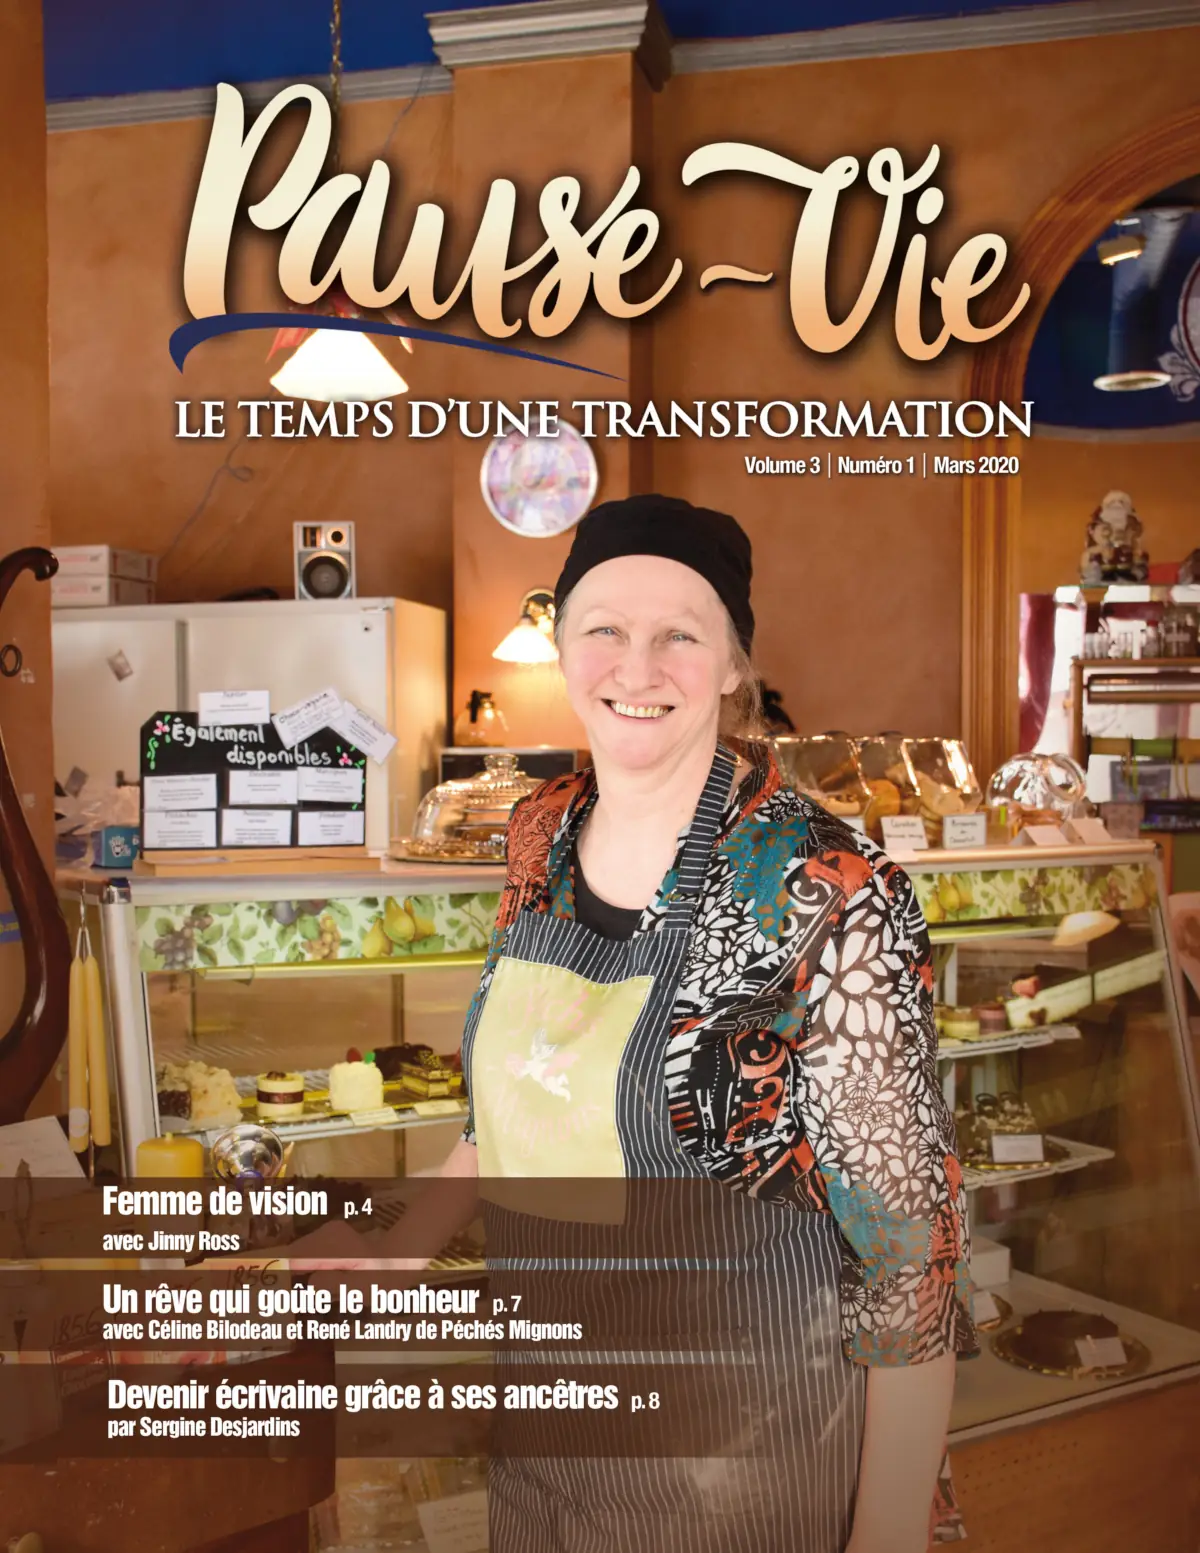 Couverture du magazine Pause-Vie (mars 2020).